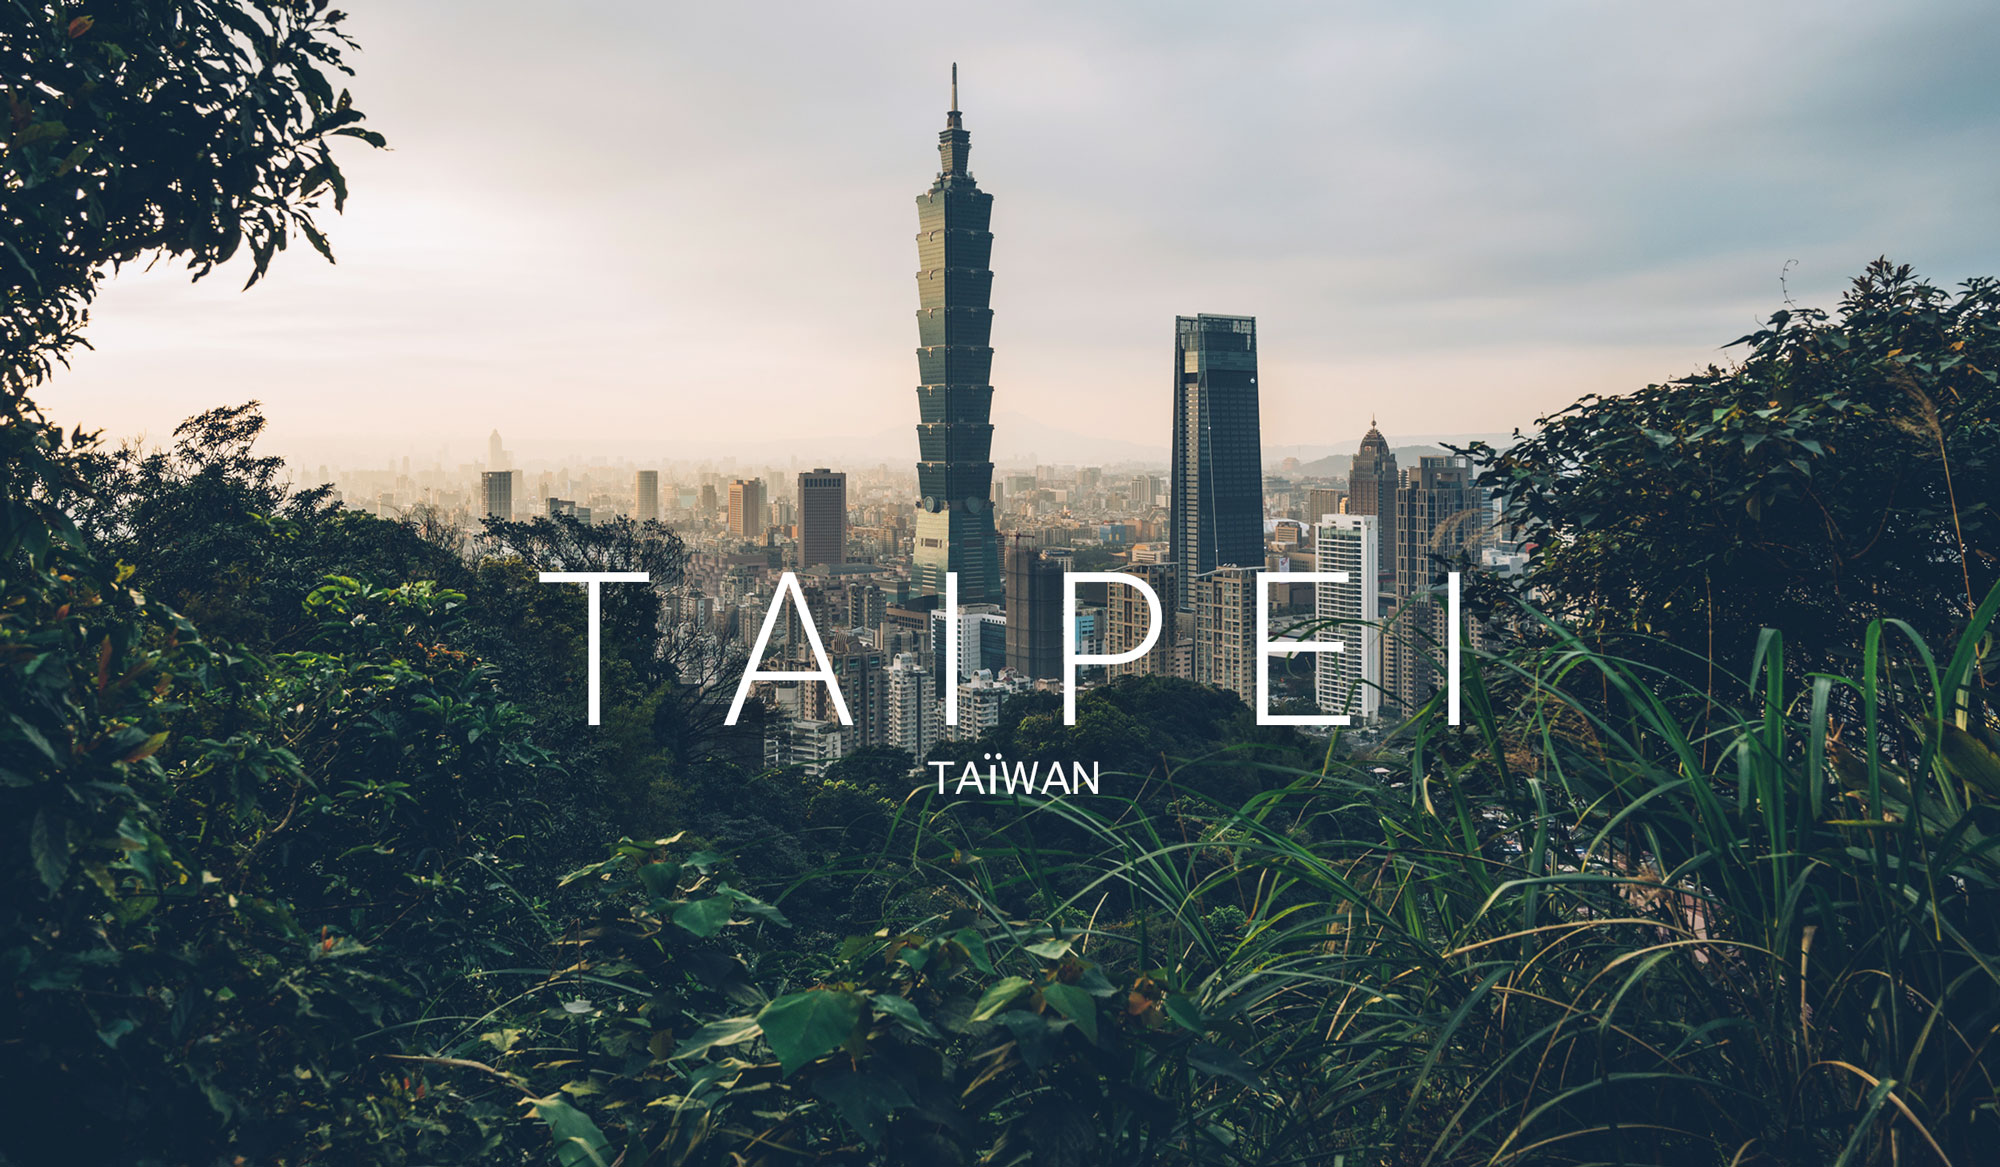 Que faire à Taipei et autour? Notre itinéraire sur le blog voyage